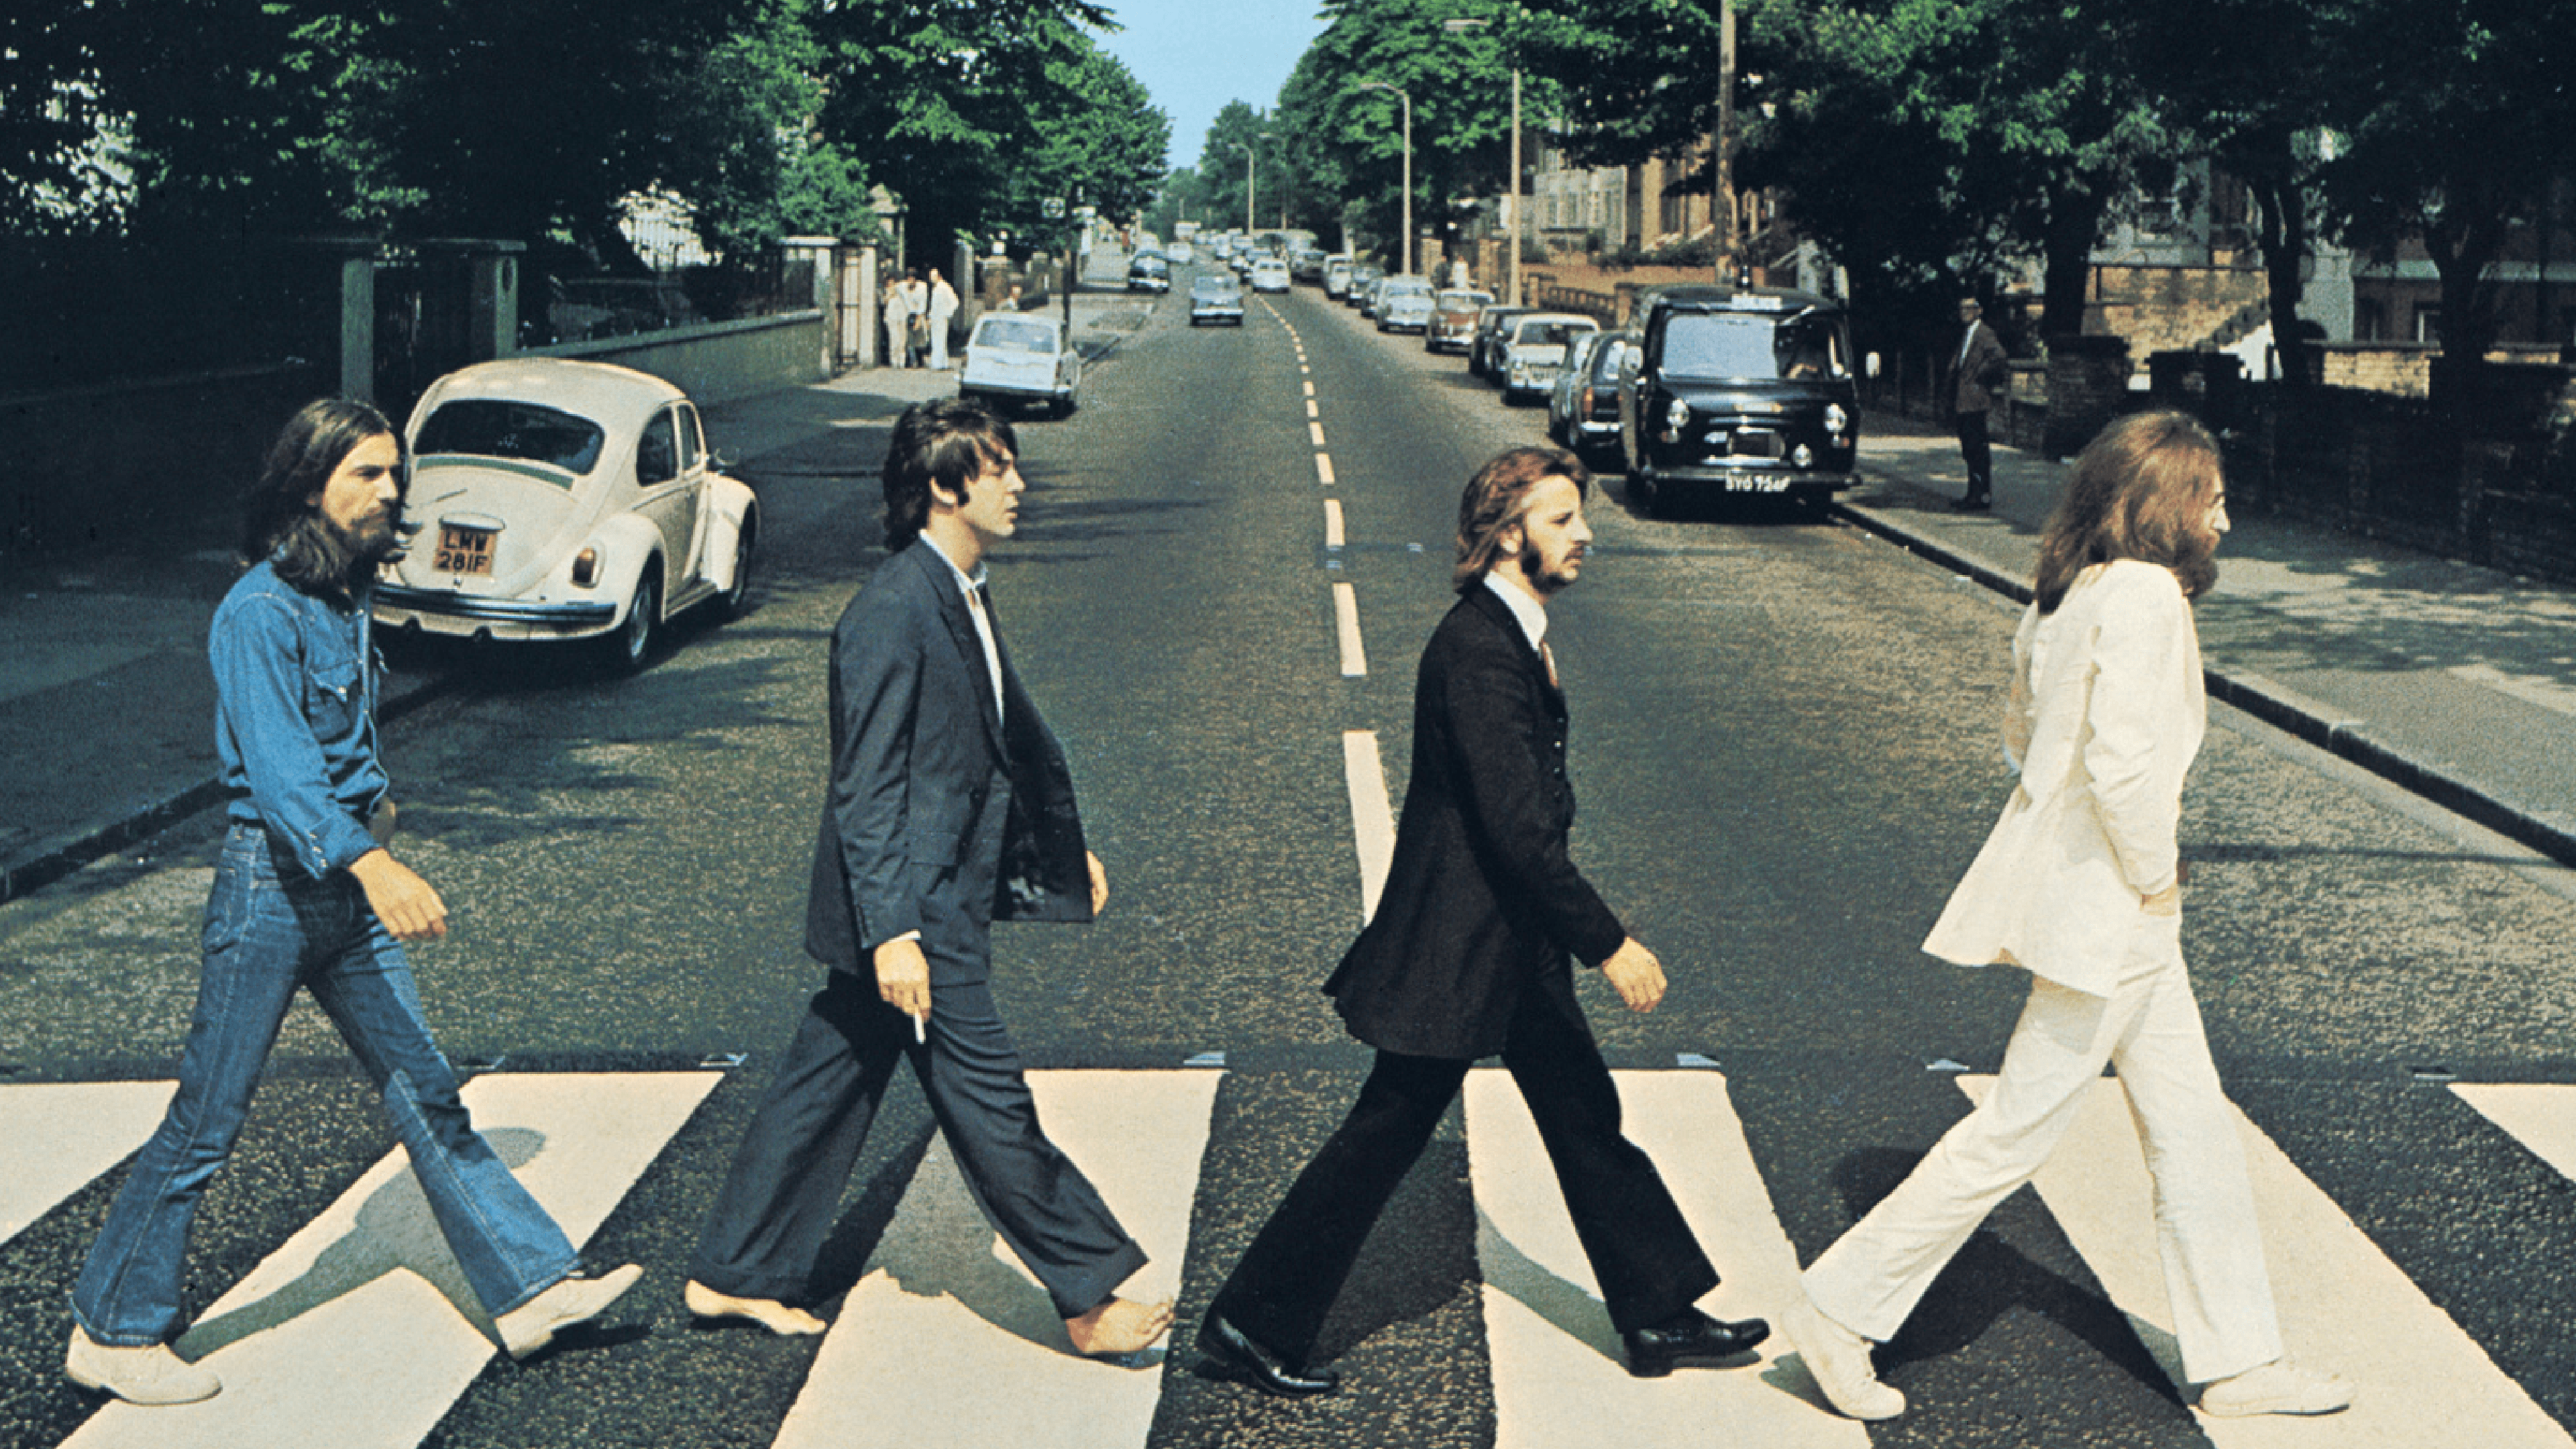 The Beatles Road [3840x2160] [OC]